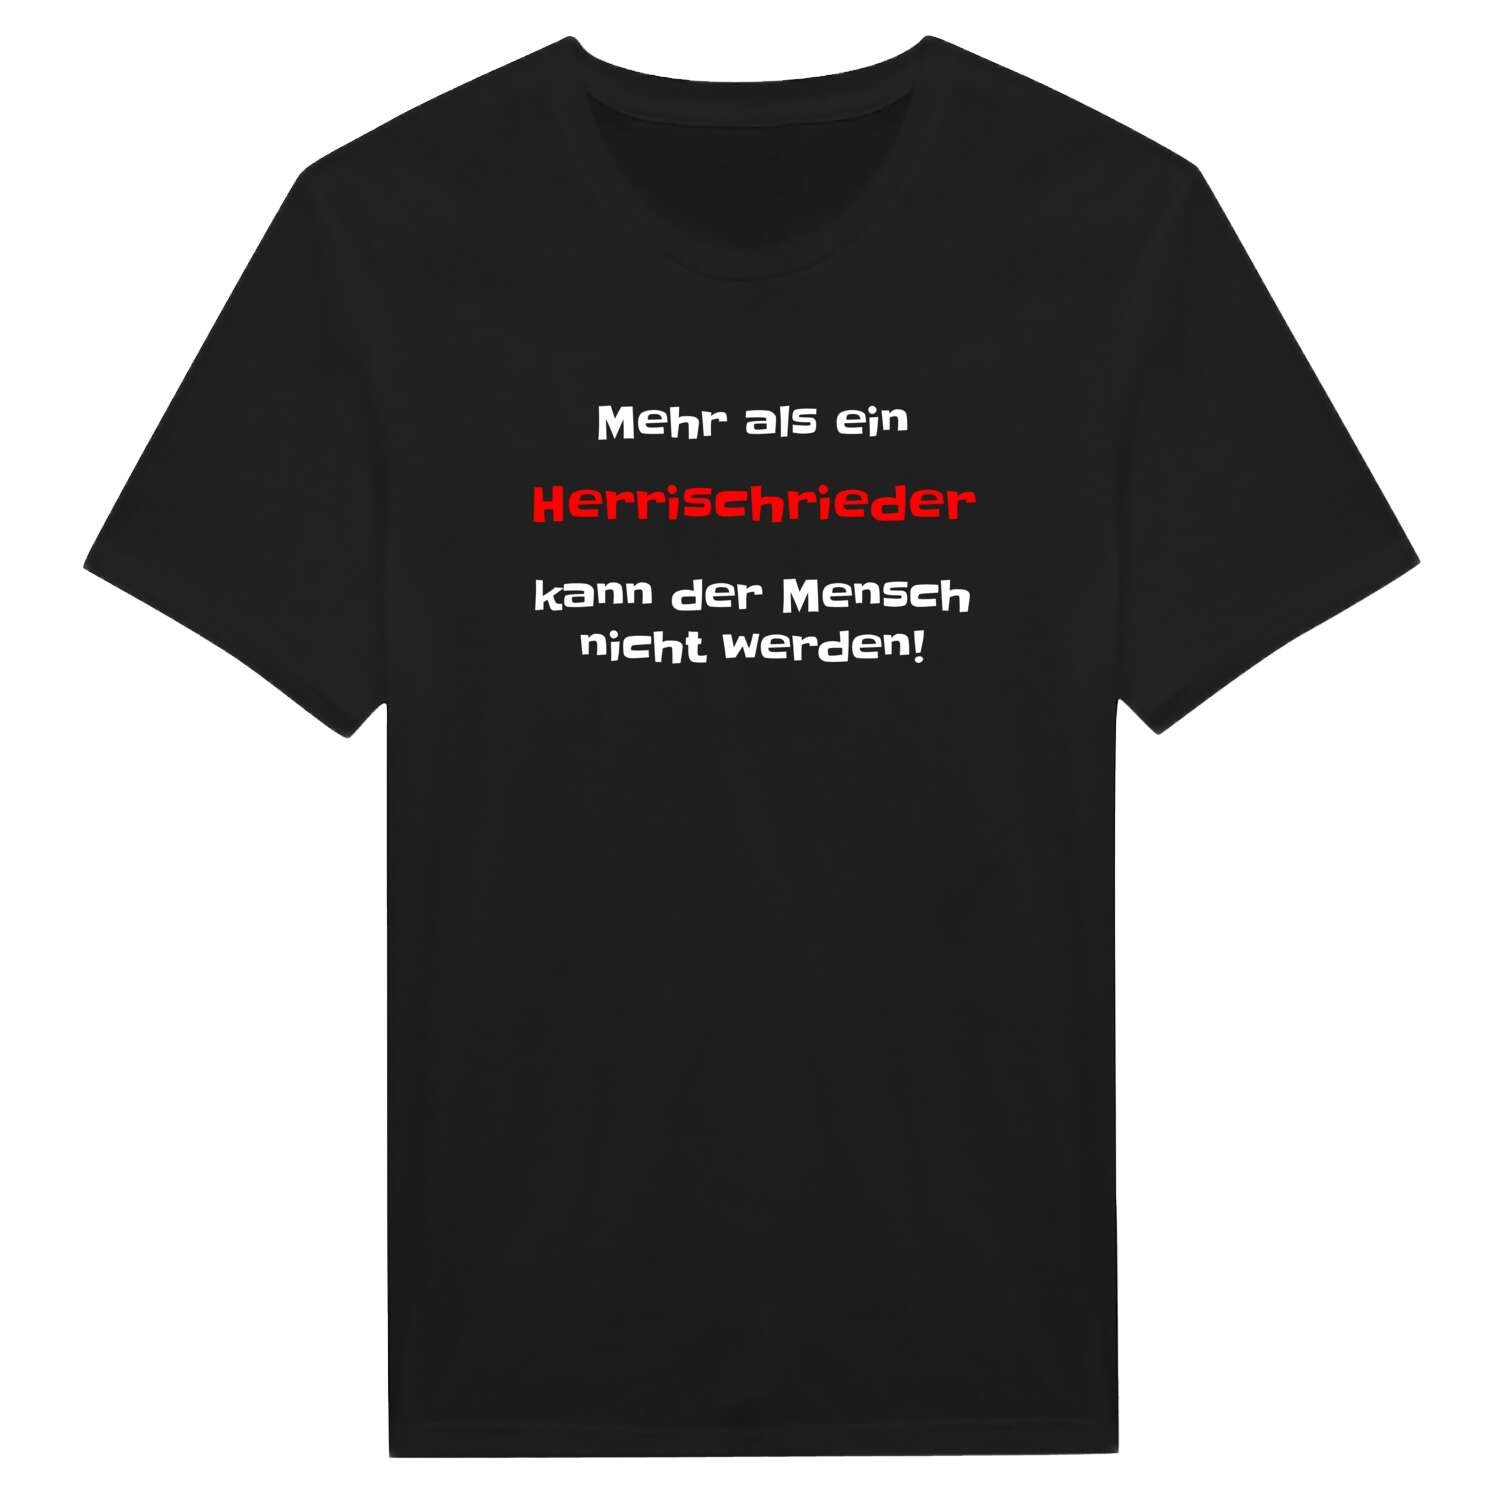 Herrischried T-Shirt »Mehr als ein«